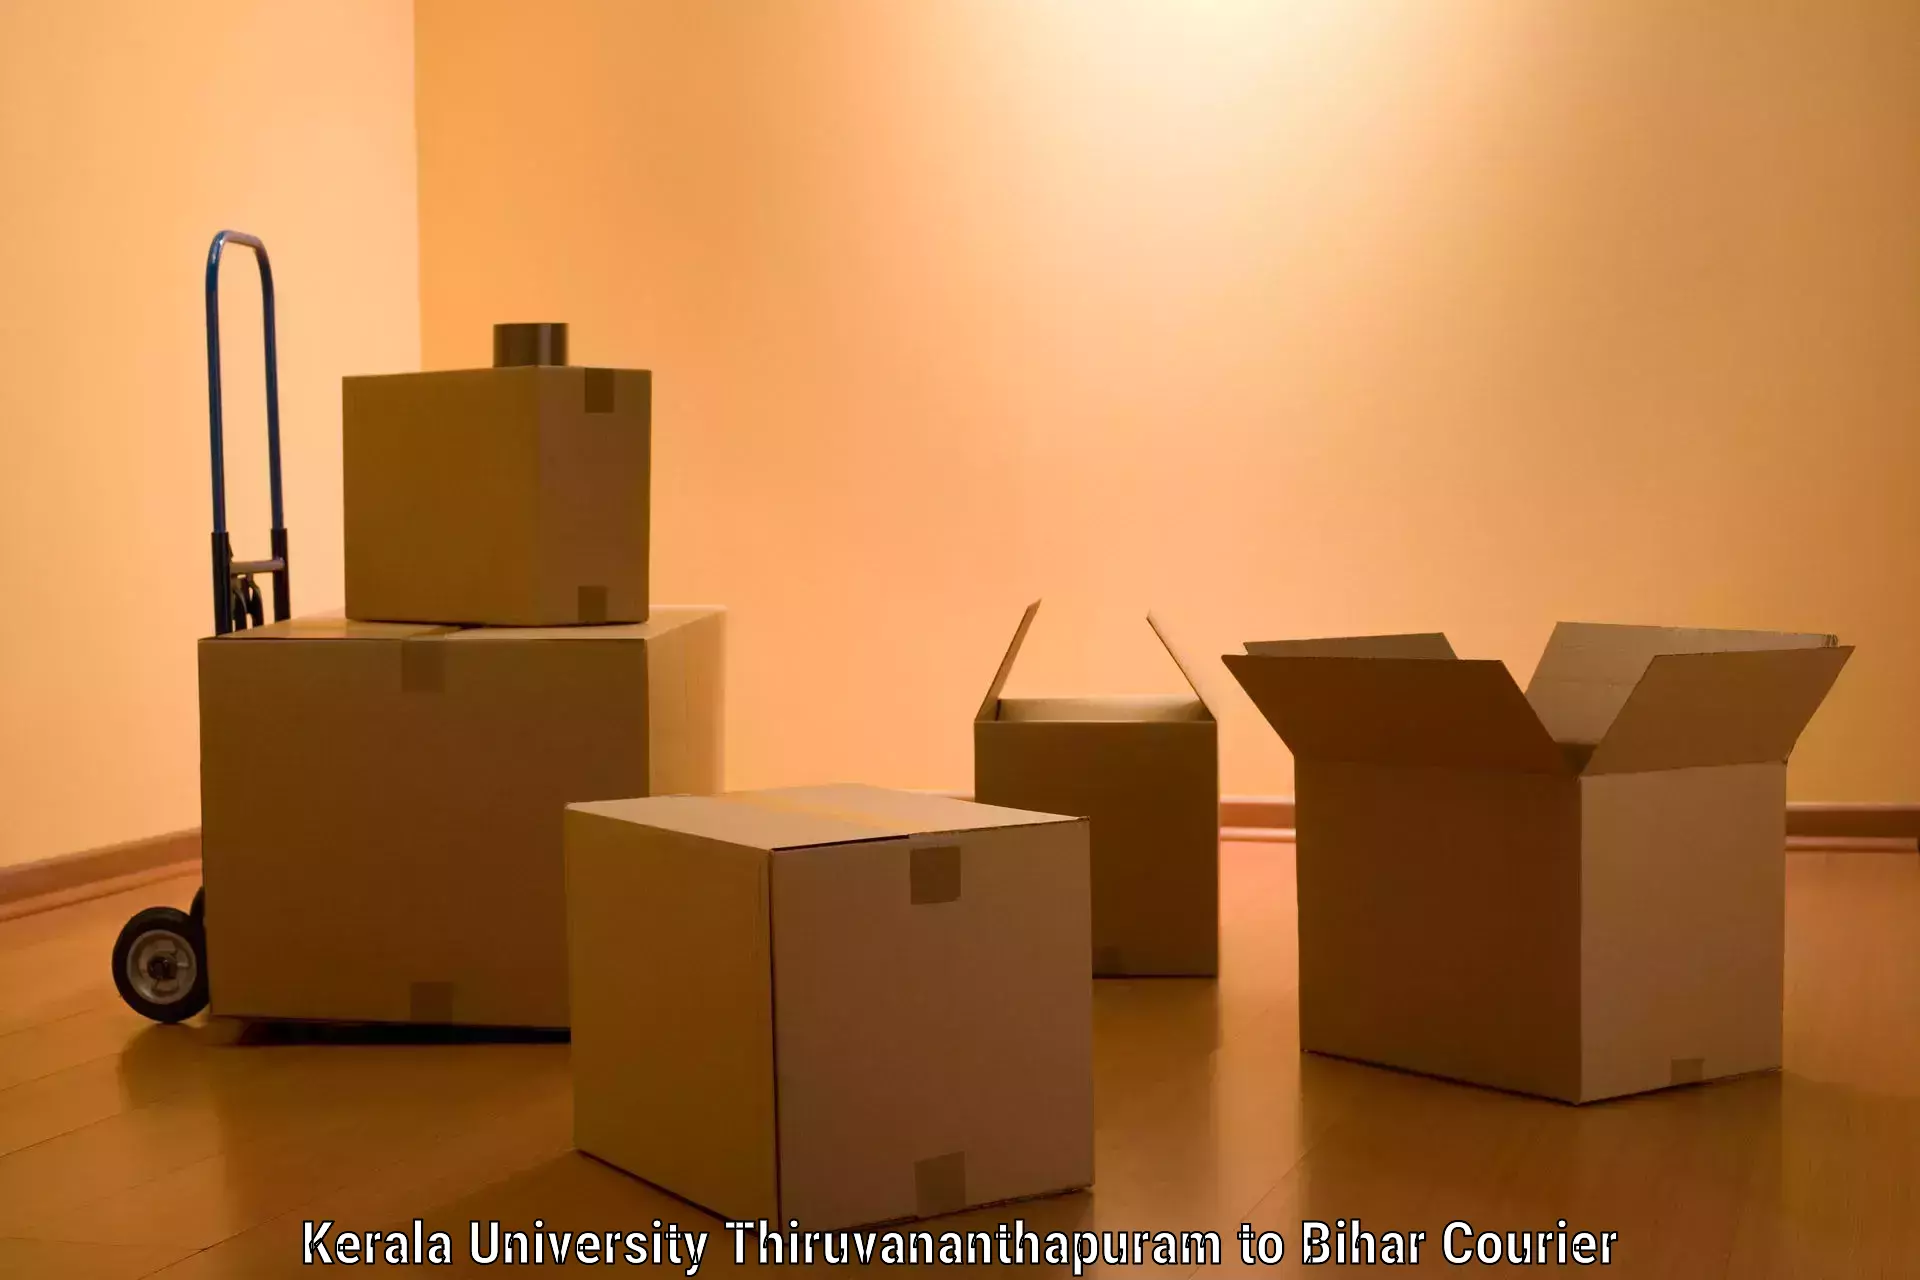 Furniture transport solutions Kerala University Thiruvananthapuram to Daudnagar